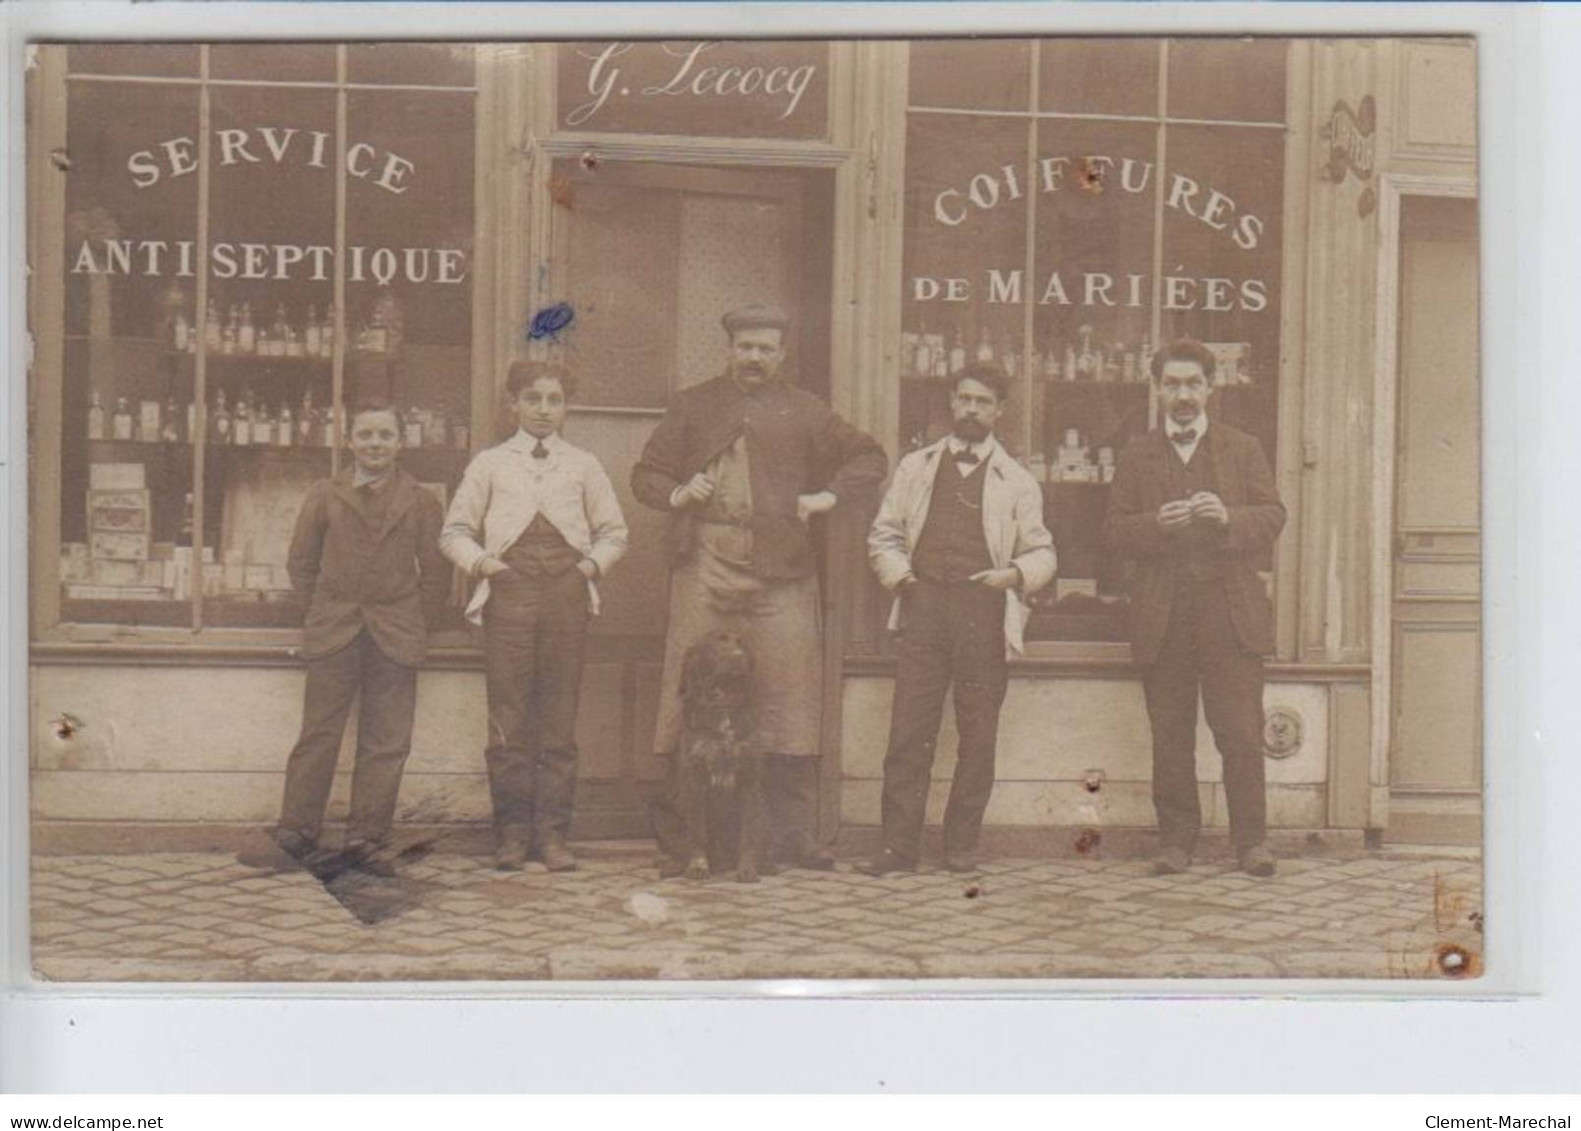 FRANCE - Coiffeur Raymond Plein, G. Lecocq, Service Antiseptique, Coiffures De Mariées Chien - état - Foto